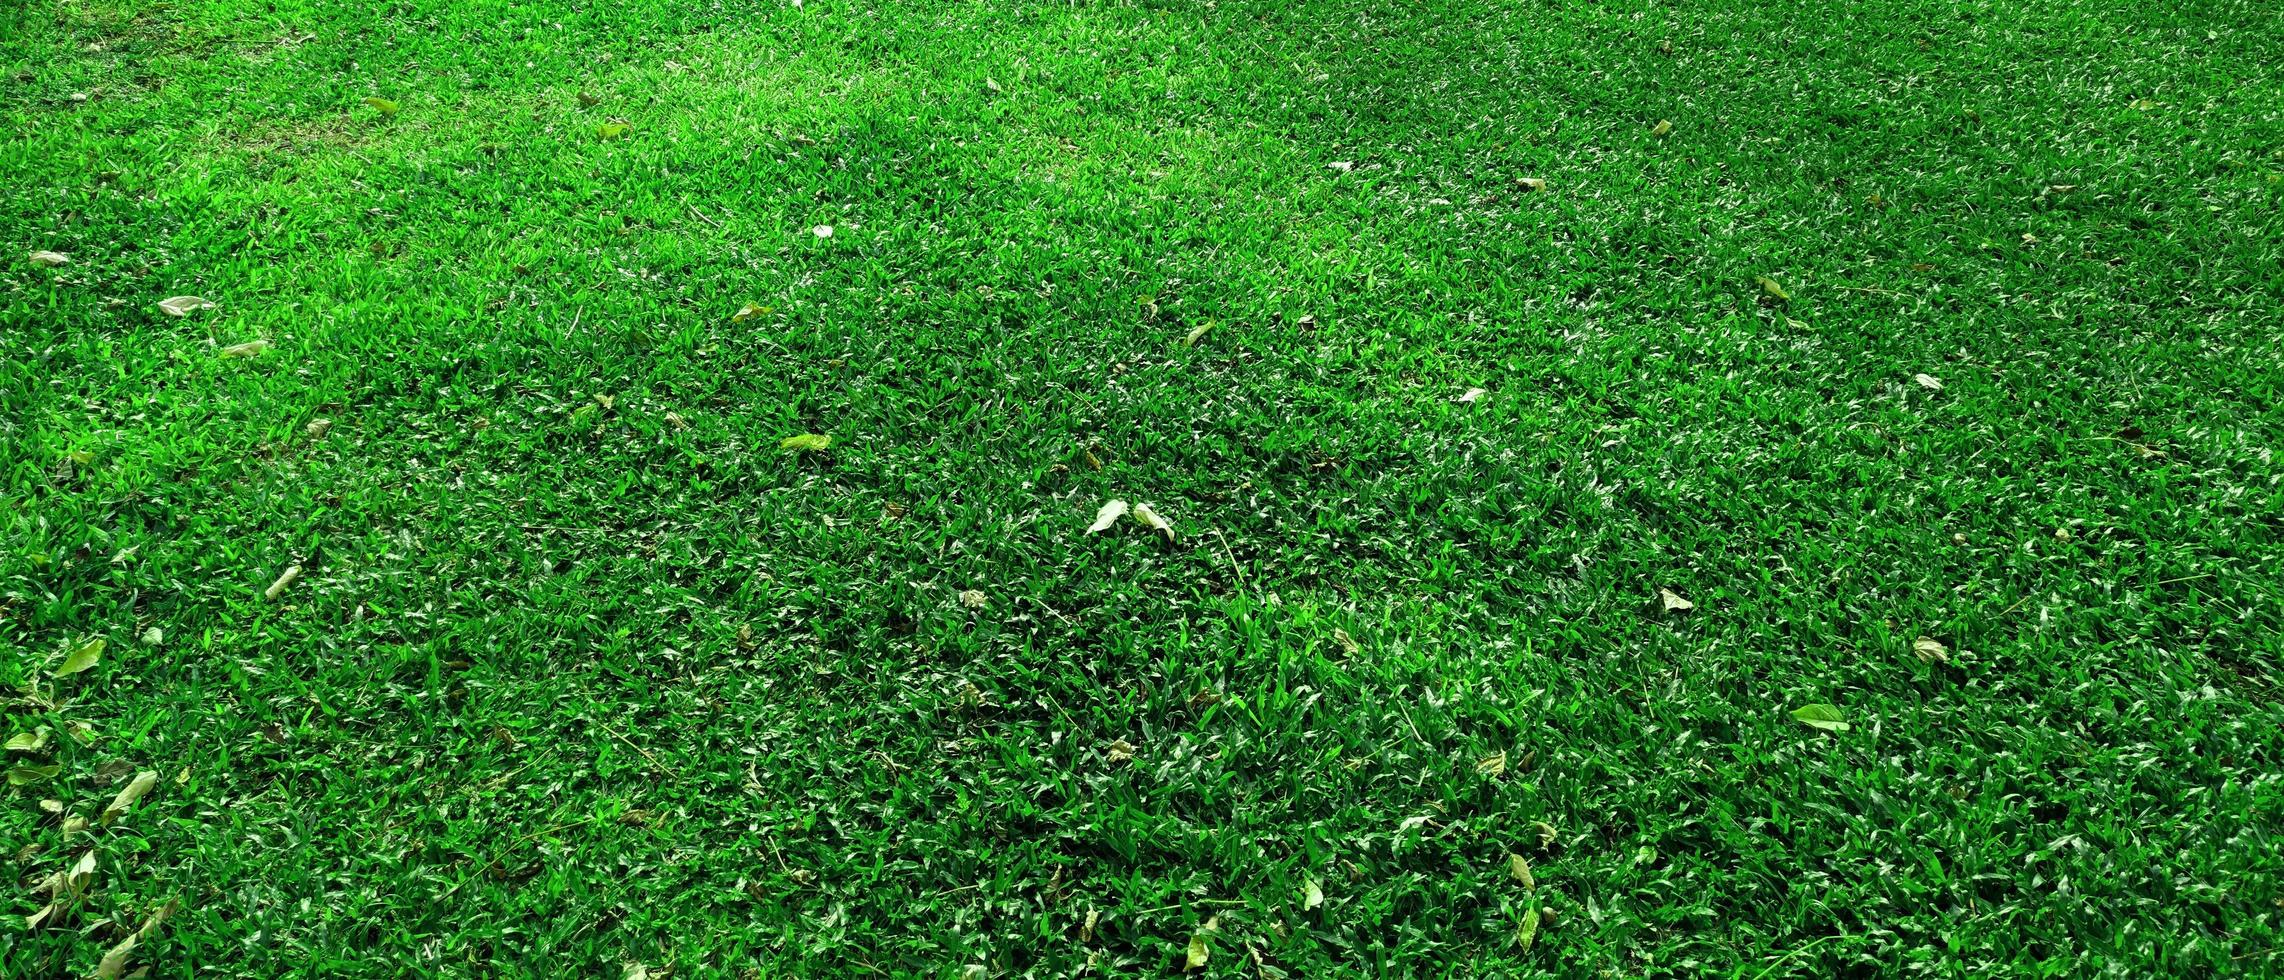 fundo de textura de grama verde no parque foto